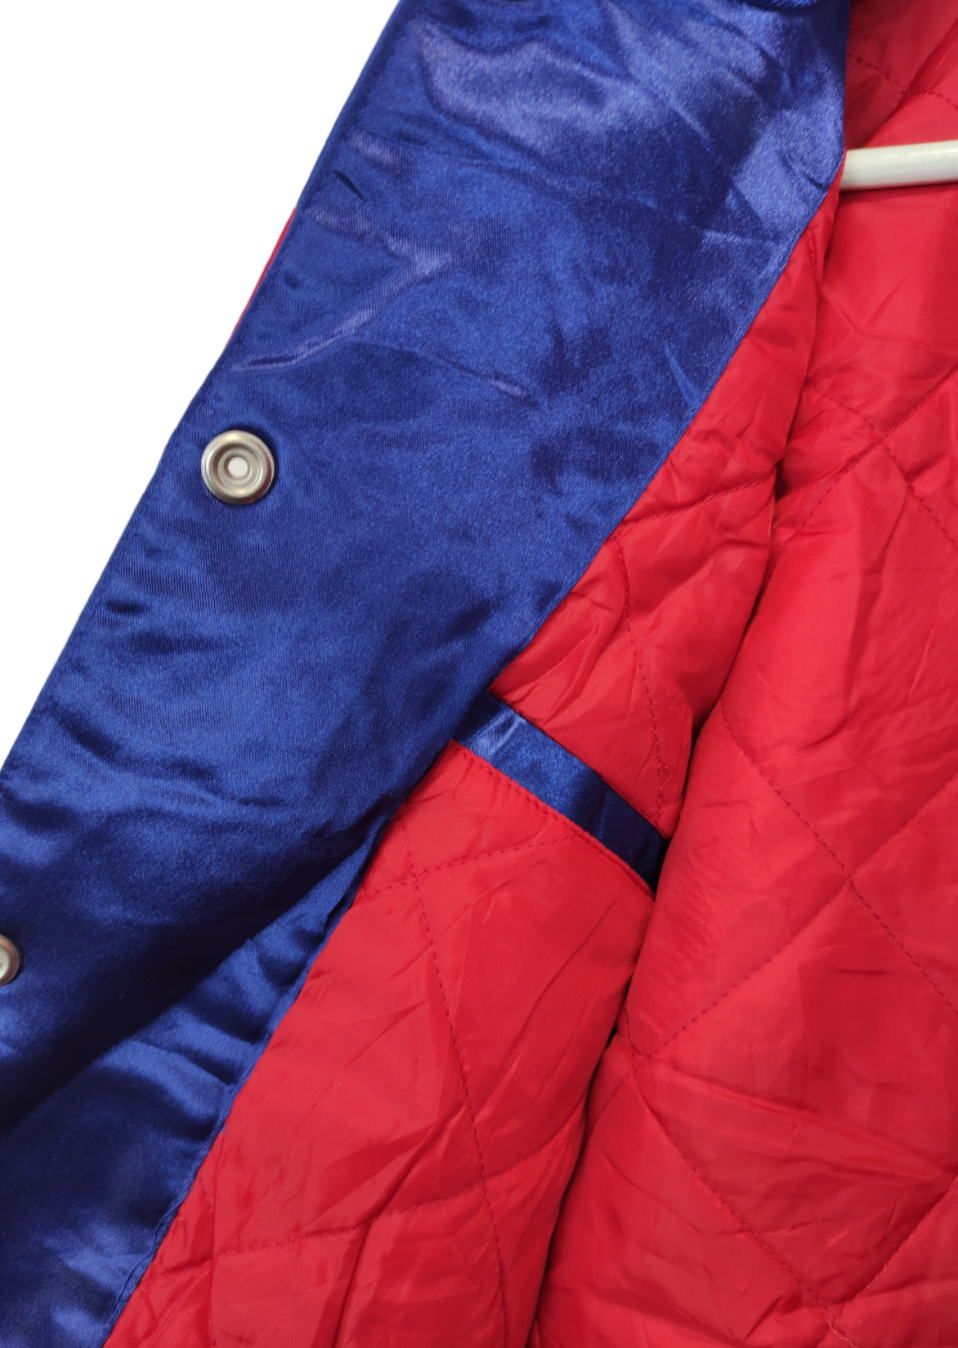 Σπορ Μπουφάν/Sport Bomber Jacket - NBA DETROIT PISTOLS σε Μπλε-Κόκκινο χρώμα (ΑΝΔΡΑΣ: M / ΓΥΝΑΙΚΑ : L))